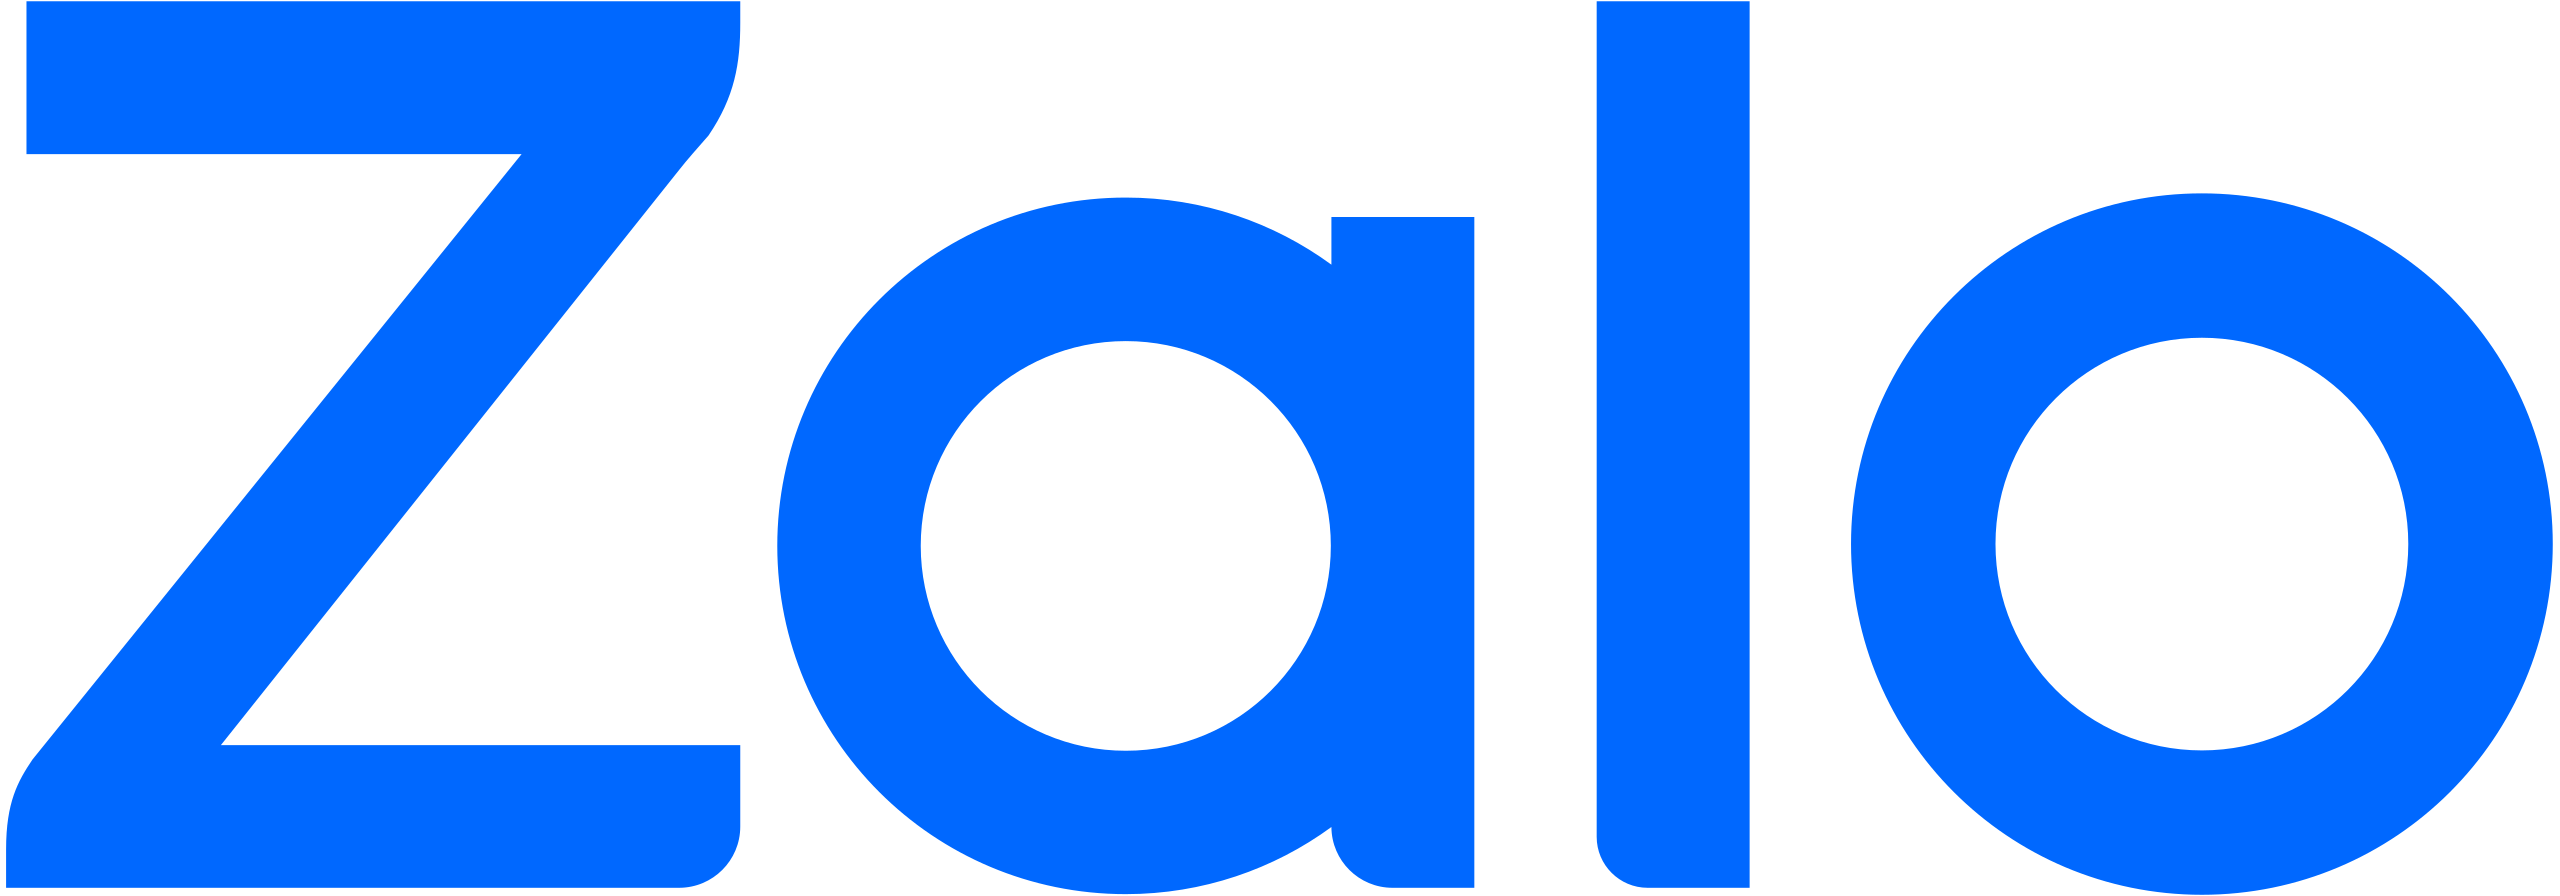 Zalo_logo_2019.svg